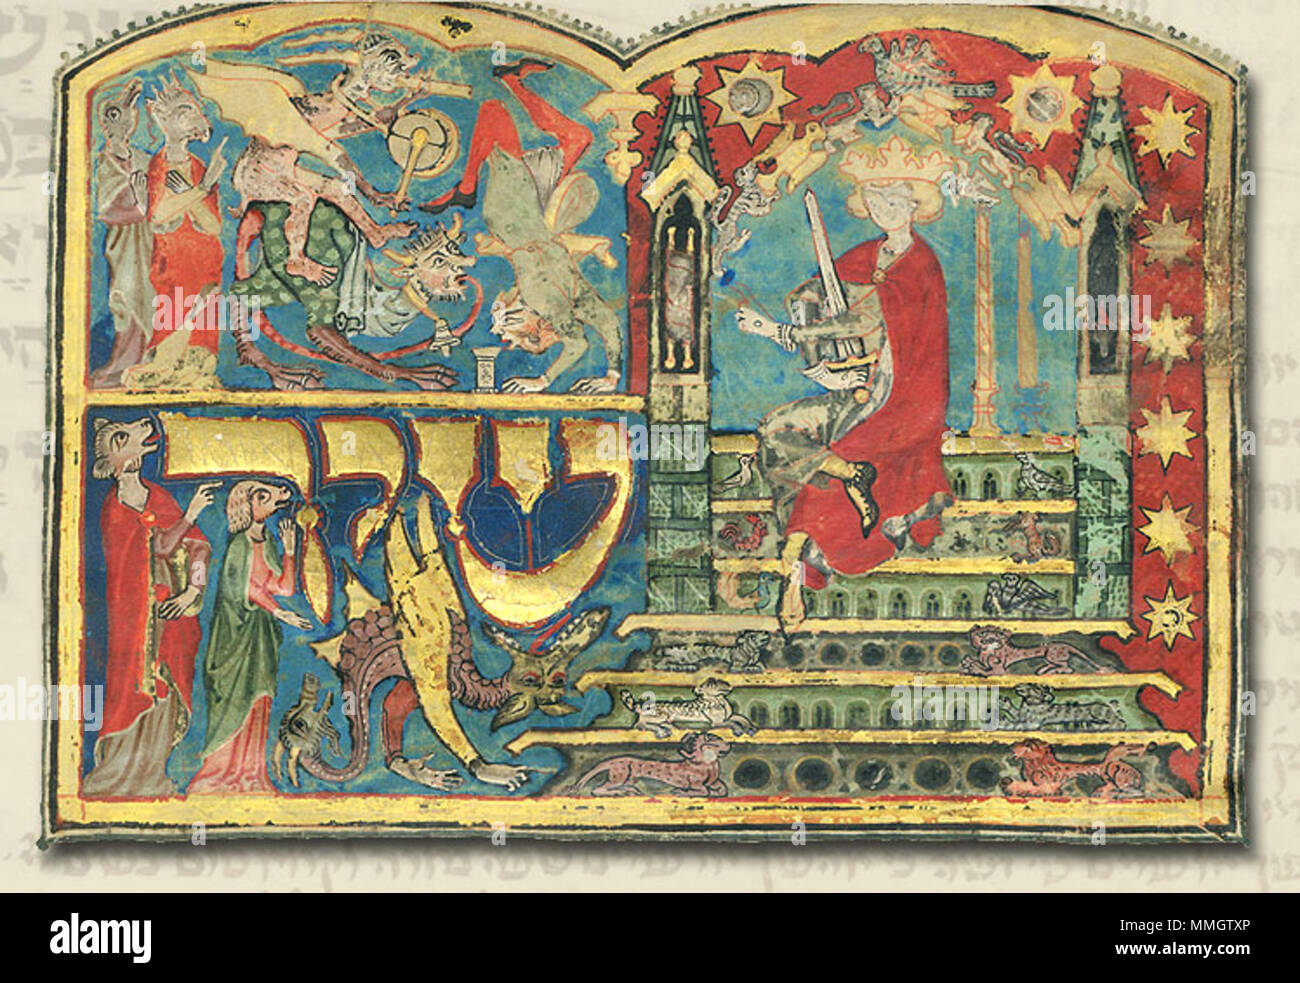 Inglese: In forse la più famosa immagine di tutta Mahzor tripartito  manoscritto, decorare il frontespizio per il Cantico dei Cantici, possiamo  vedere il re Salomone seduto sul trono in compagnia del